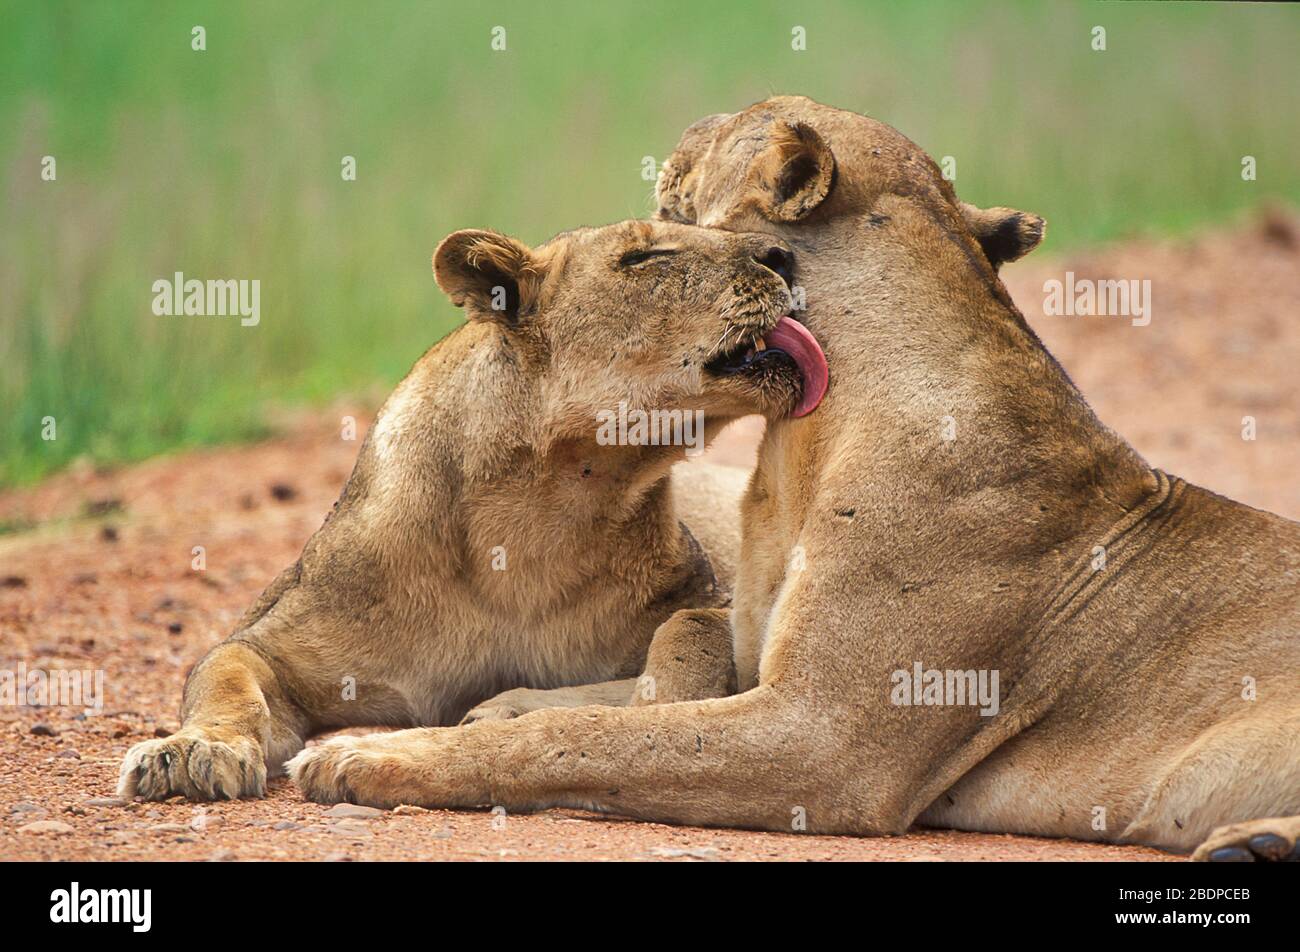 Lion, Panthera leo, Zimbabwe, Afrique, se toilettant Banque D'Images